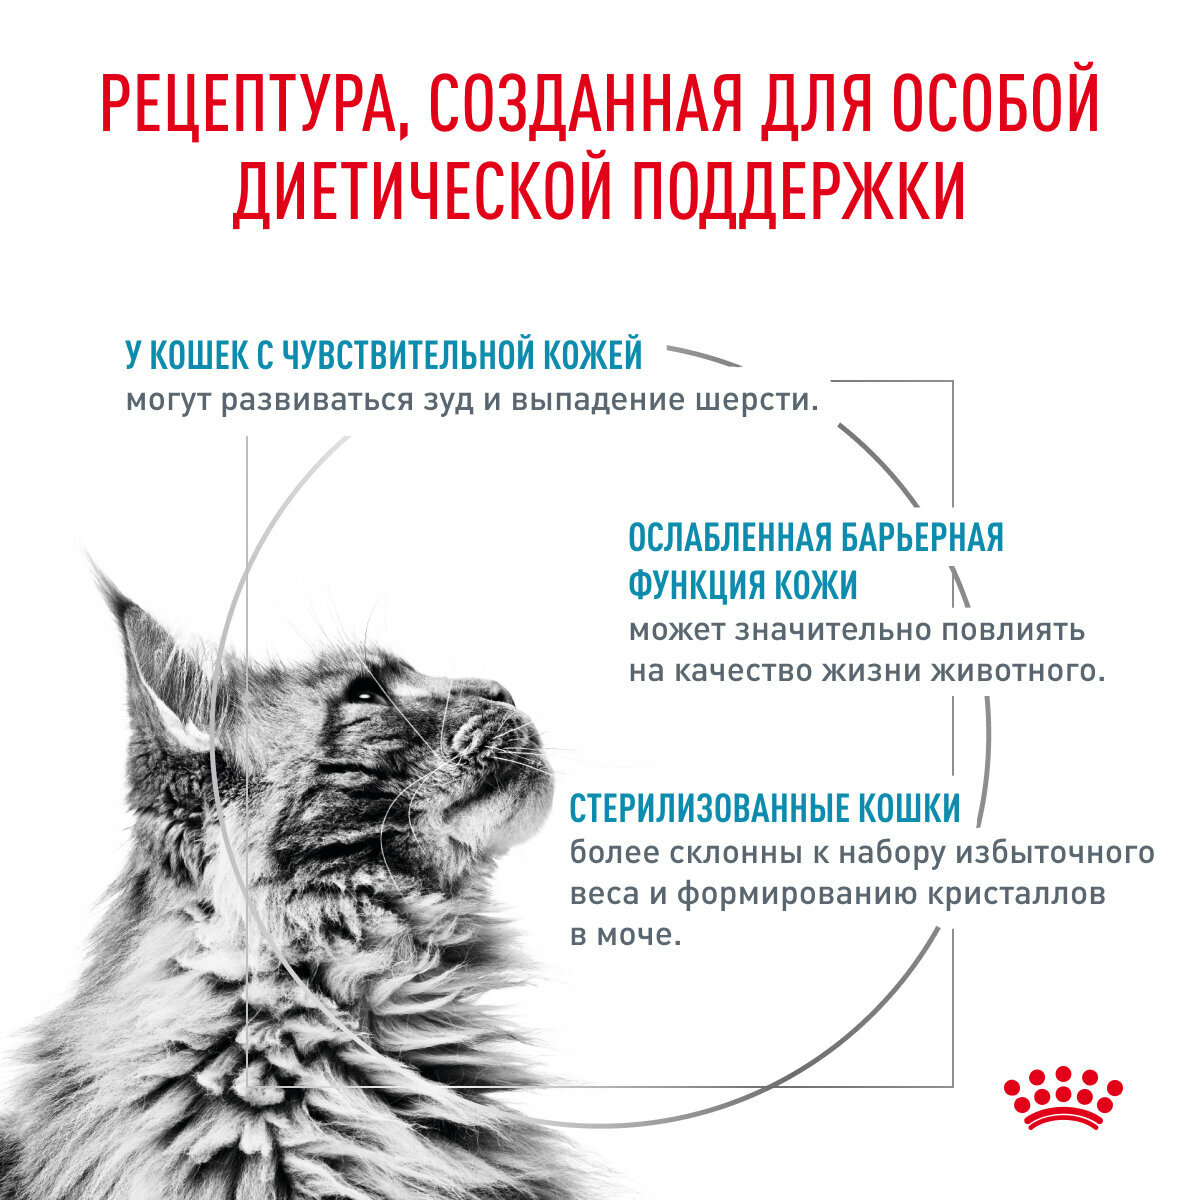 Корм для кошек для поддержания защитных функций кожи Royal Canin Skin & Coat (Скин Энд Коат), сухой диетический, 0,4 кг